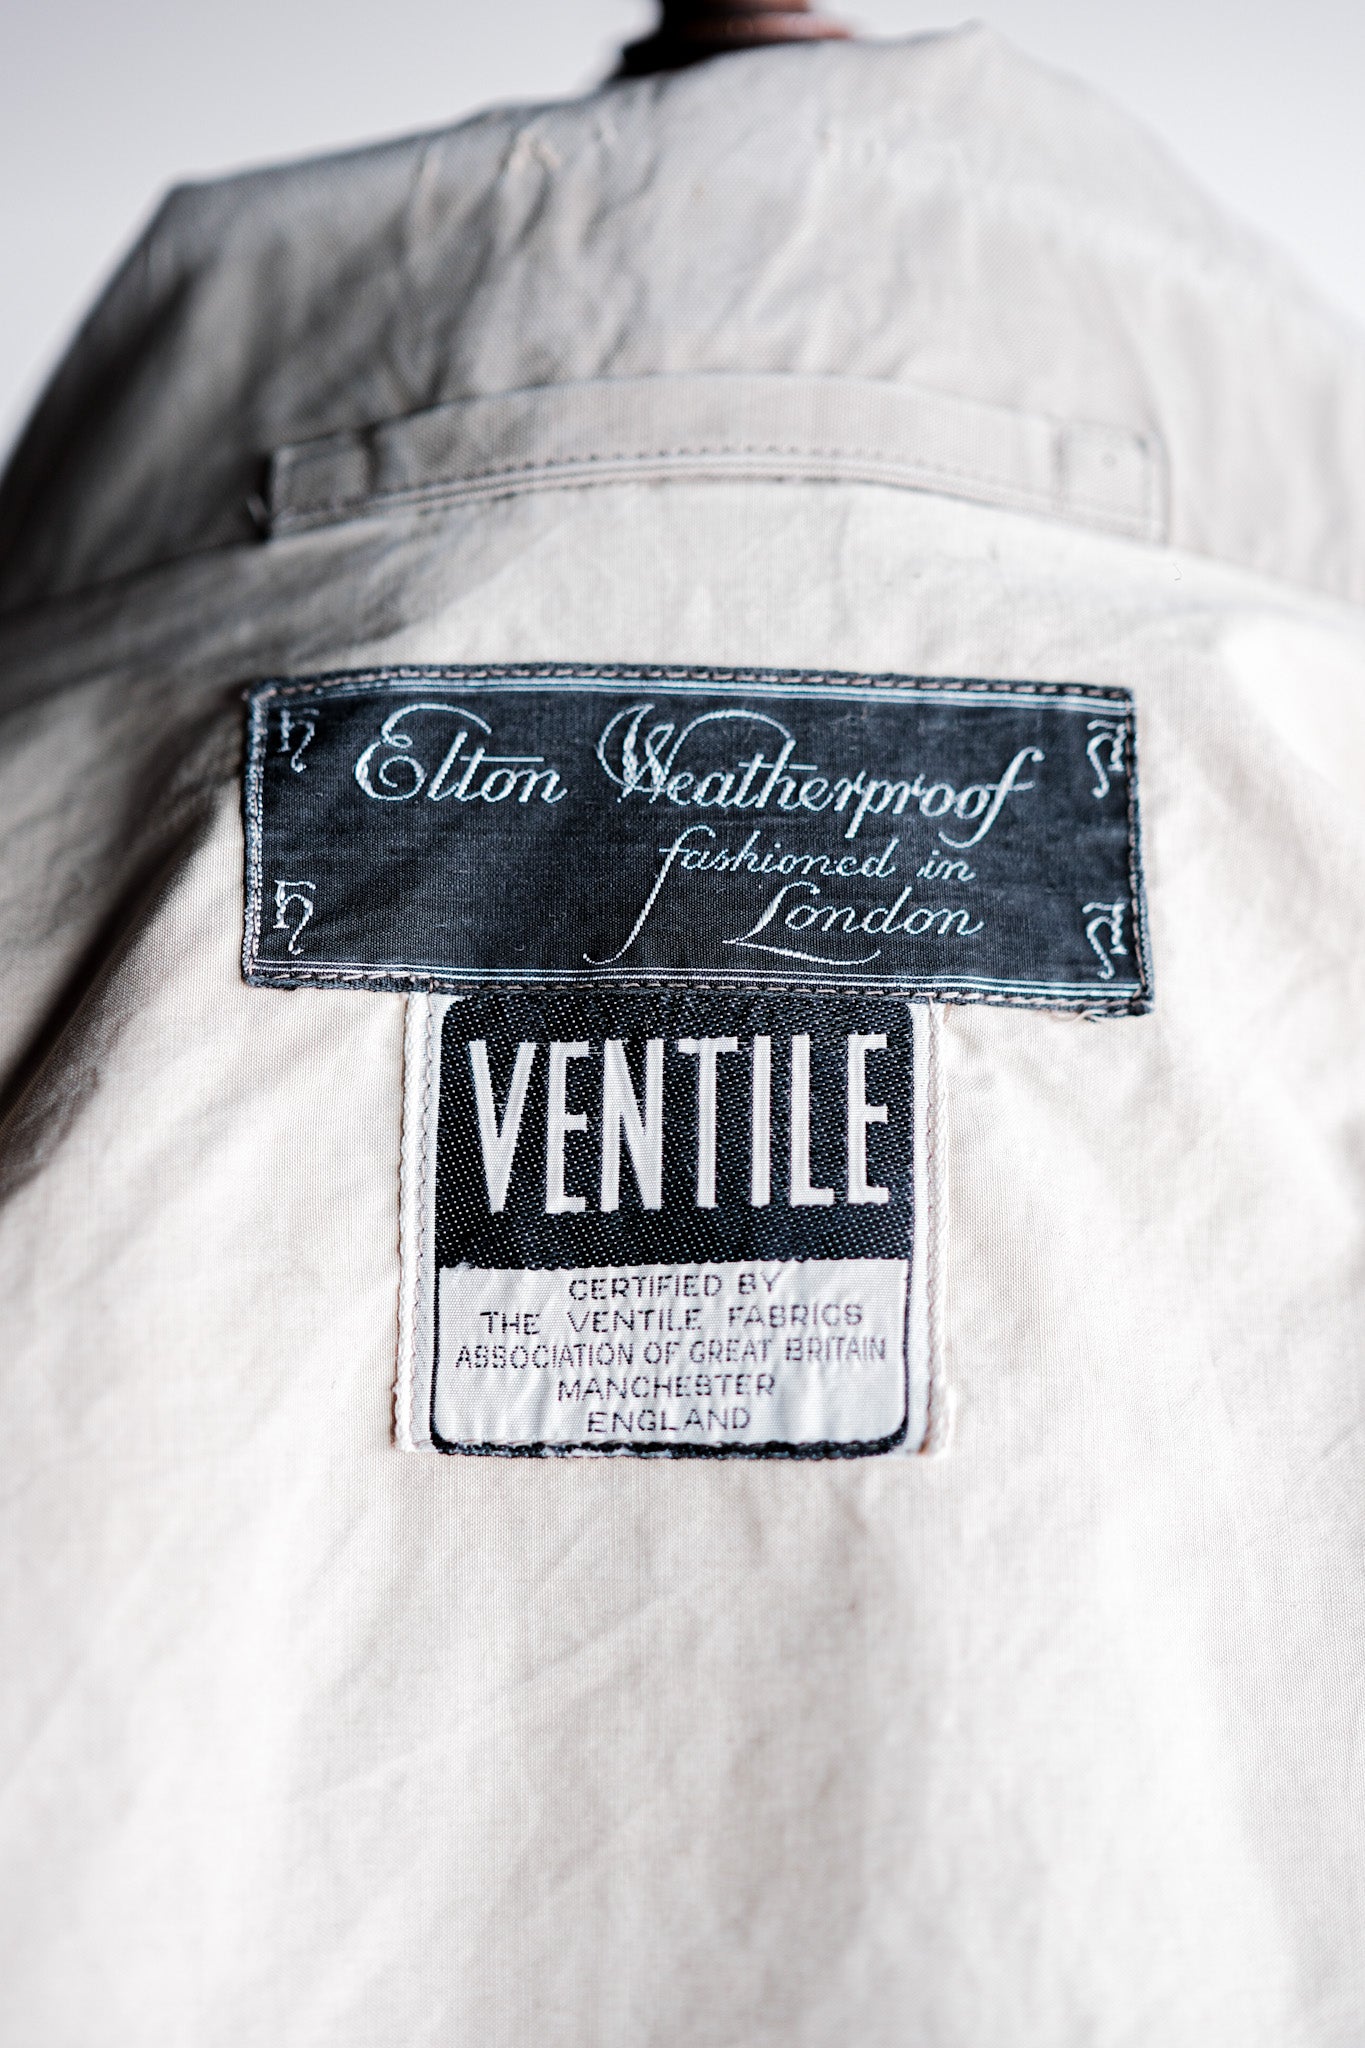 [~ 50's] Veste de ventile demi-ceinture vintage britannique "Elton Weatherpoof"